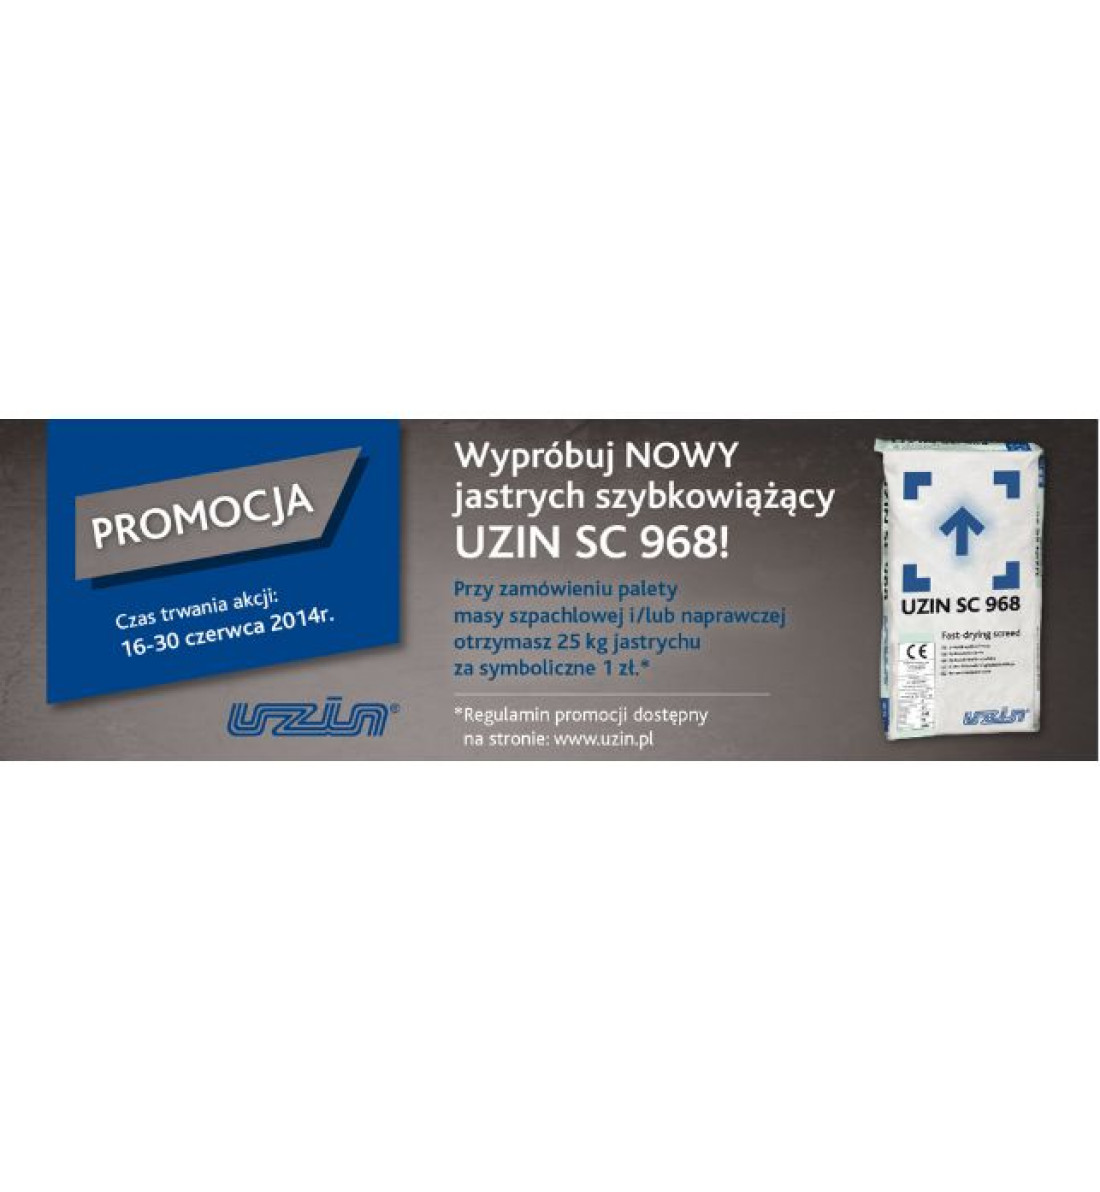 Nowy Jastrych Szybkowiążący UZIN SC 968  za 1 zł - promocja trwa od 16-30 czerwca 2014 r.